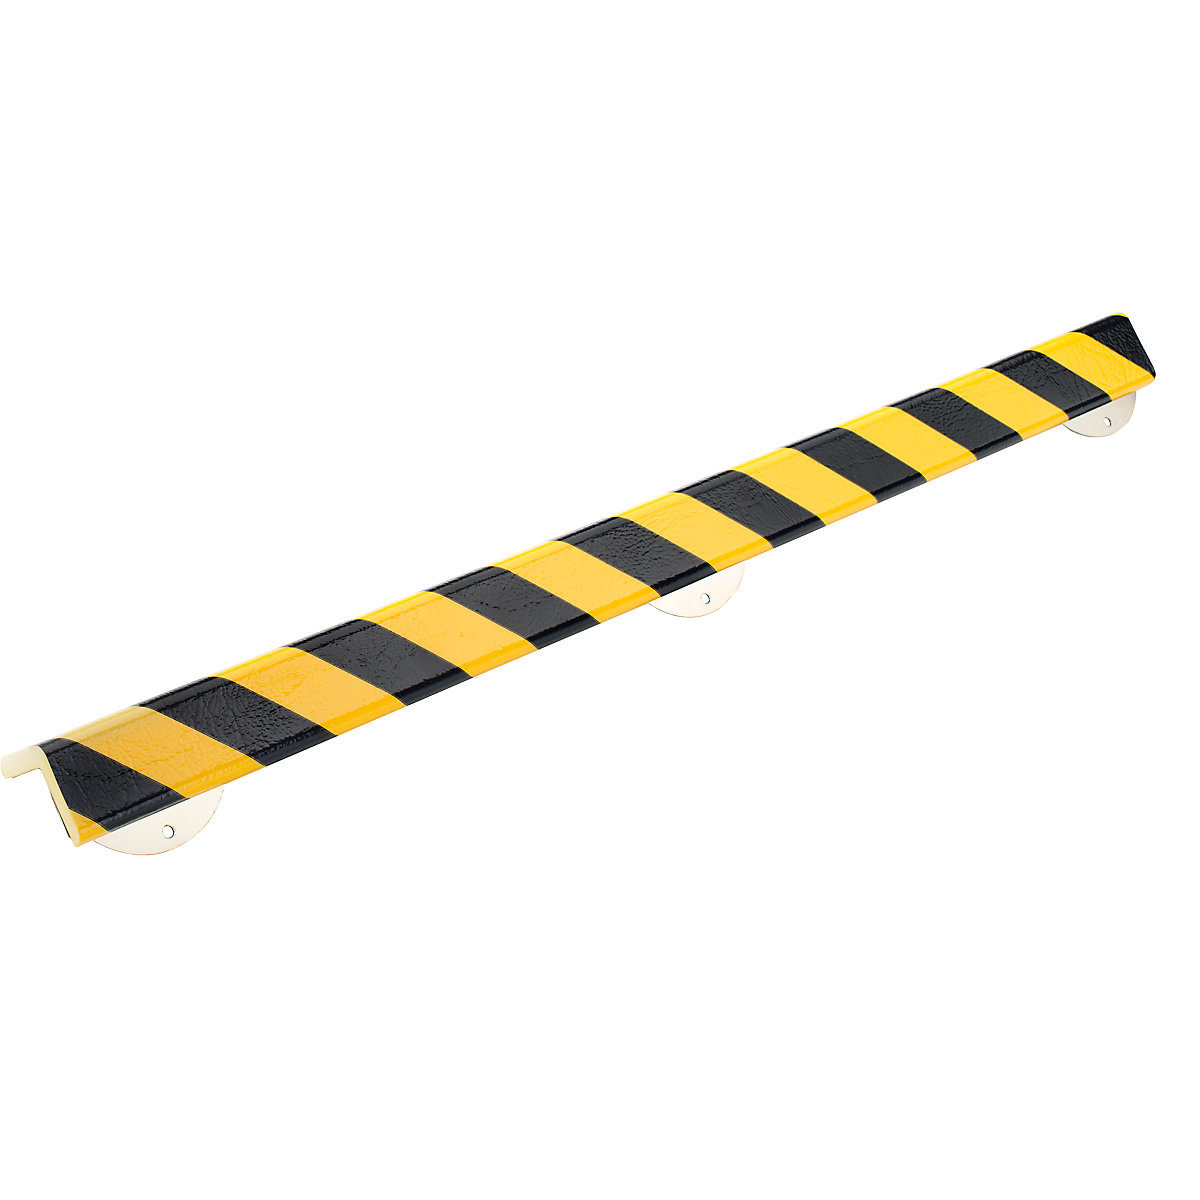 Protecție pentru colț Knuffi® cu șină de montaj – SHG, tip H+, bucată de 1 m, negru / galben-14